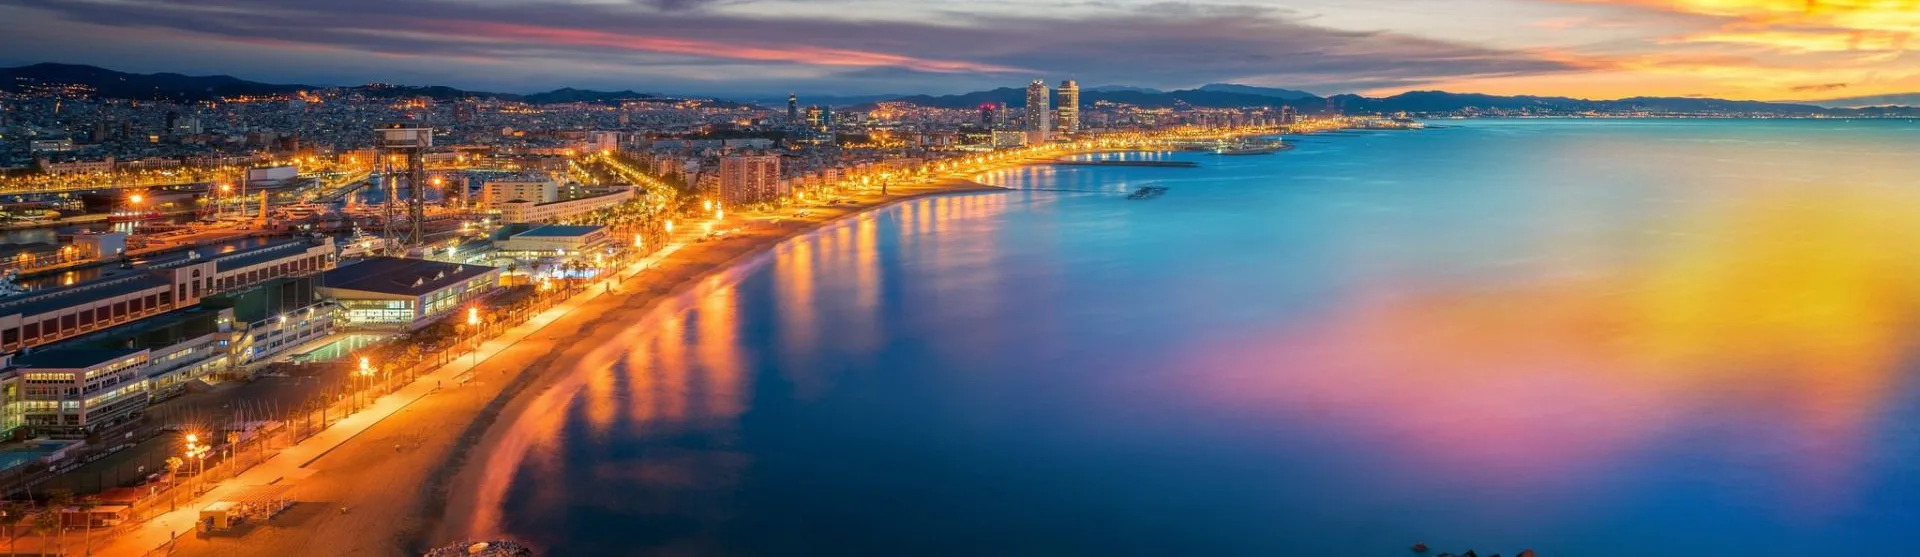 Cruisevakantie Middellandse Zee - Barcelona